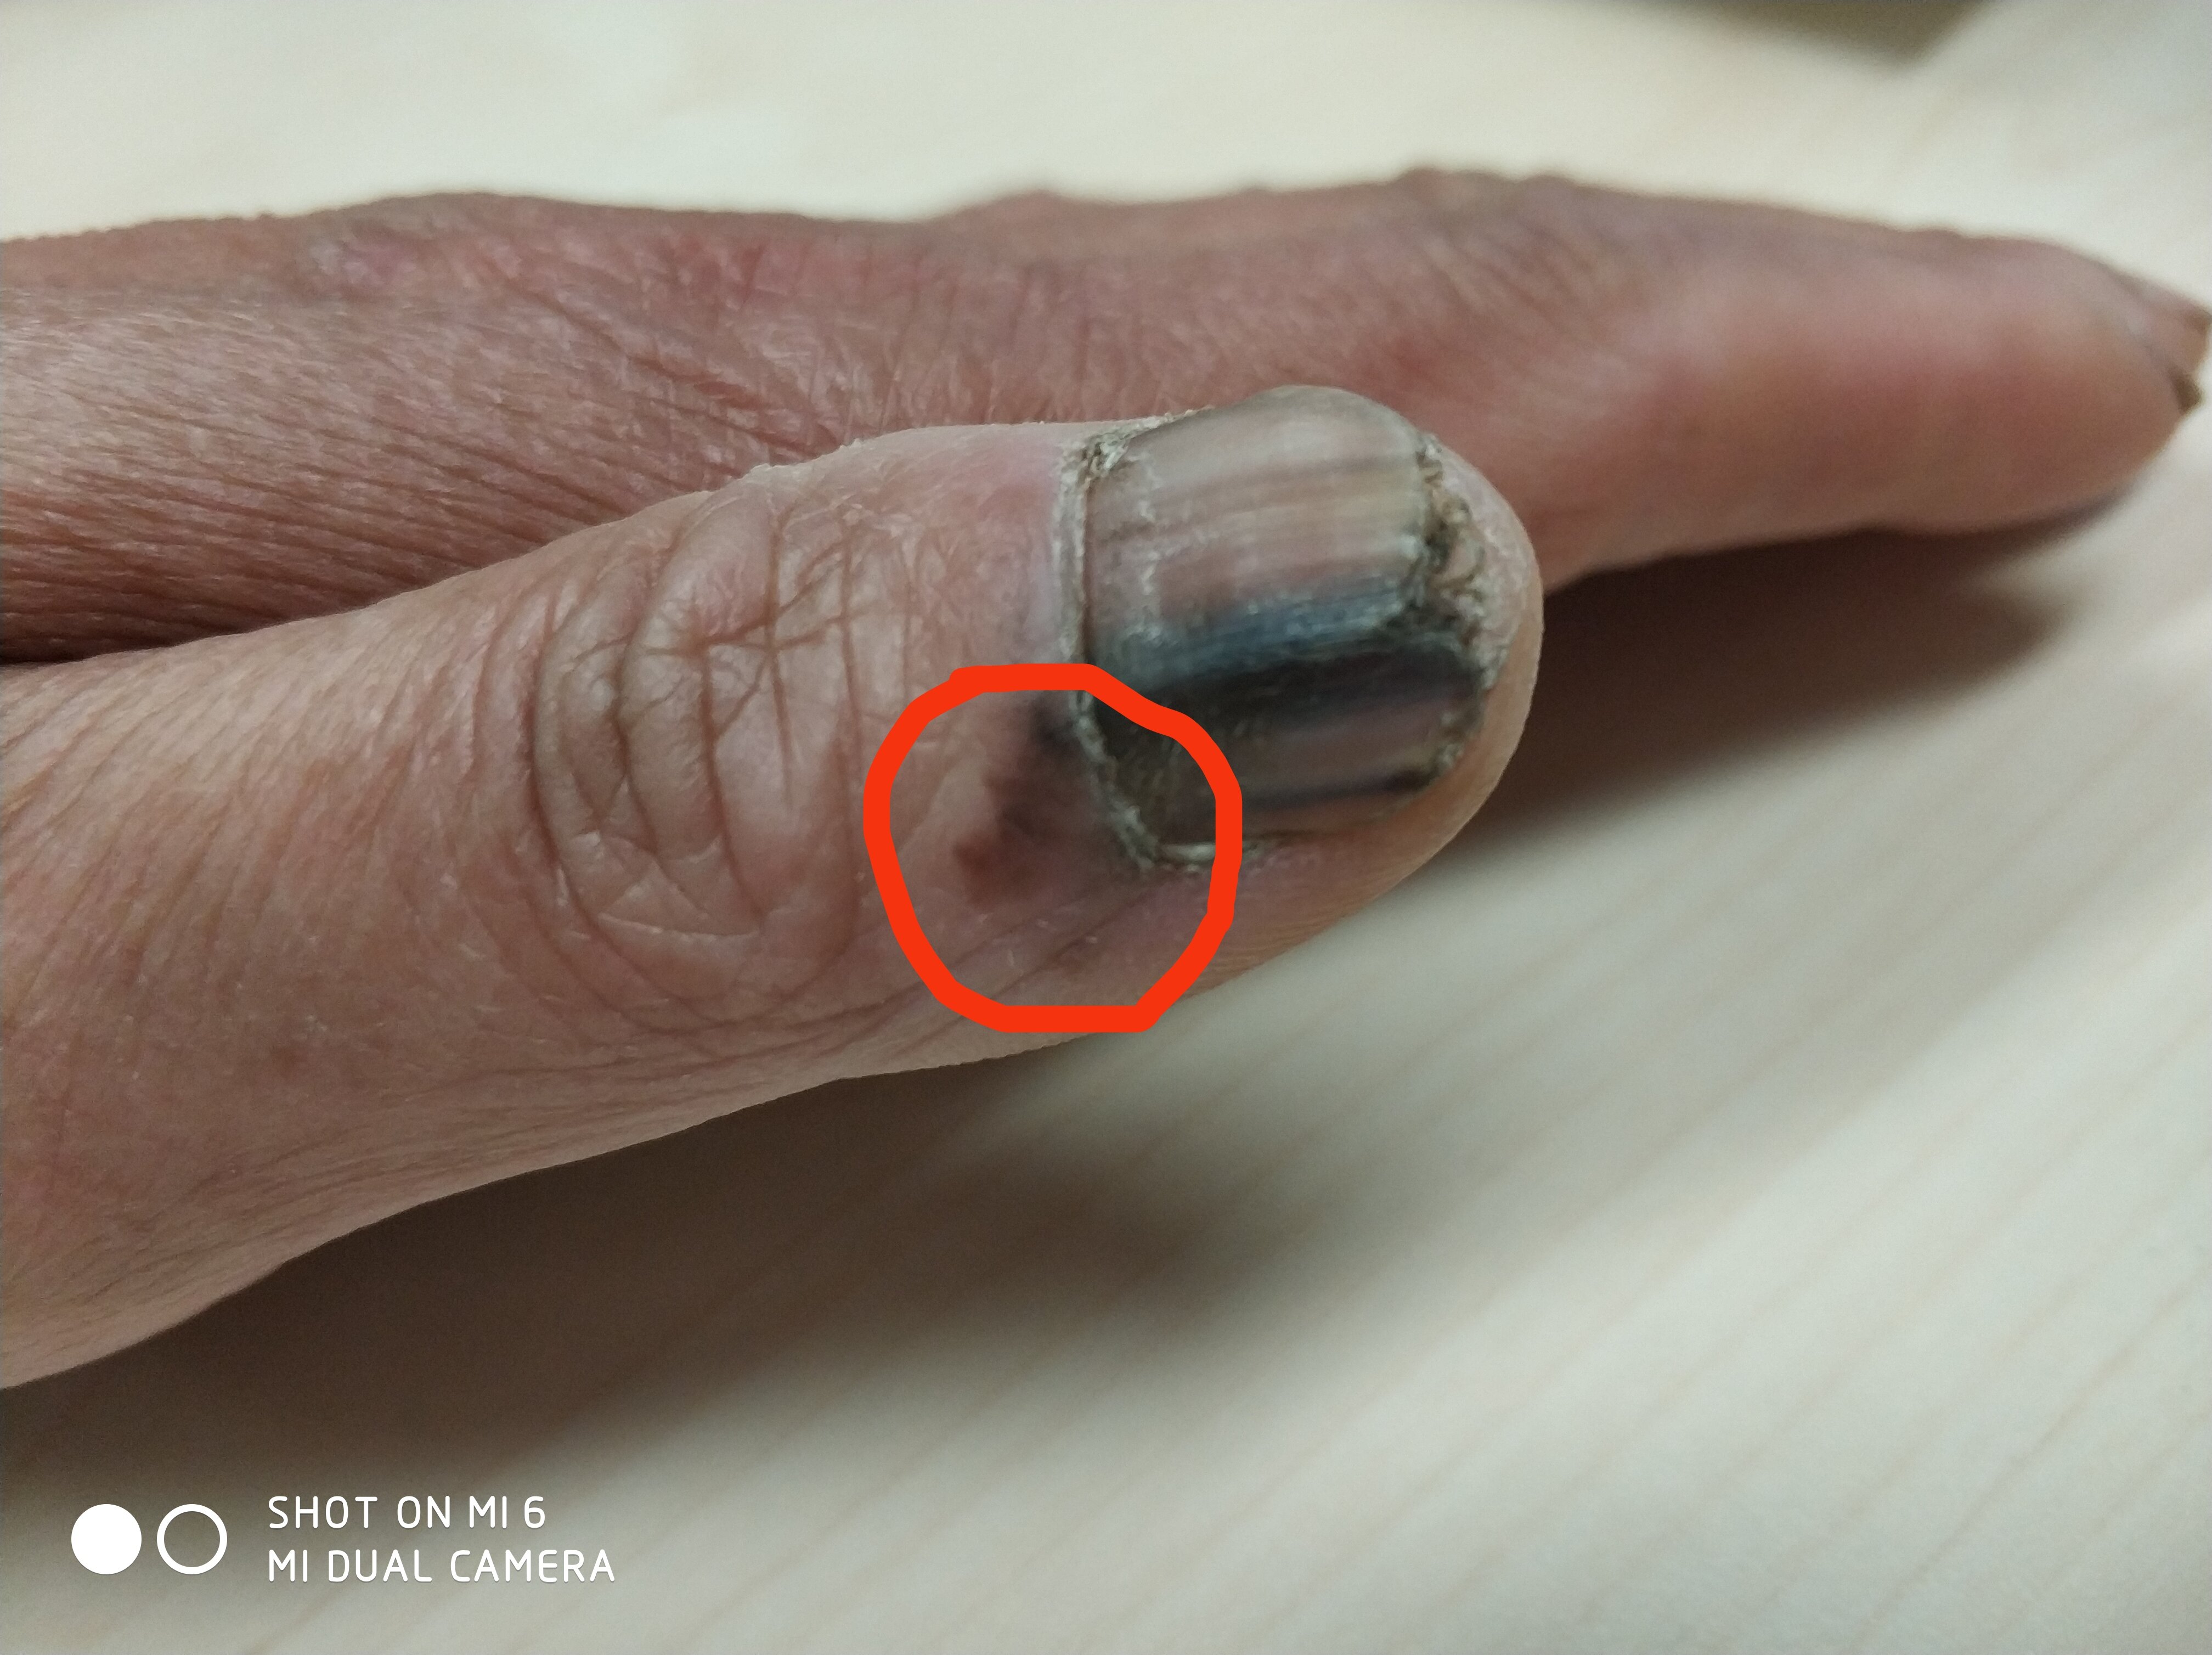 孩子抠指甲严重的图片,长期抠指甲的危害图片(3) - 伤感说说吧